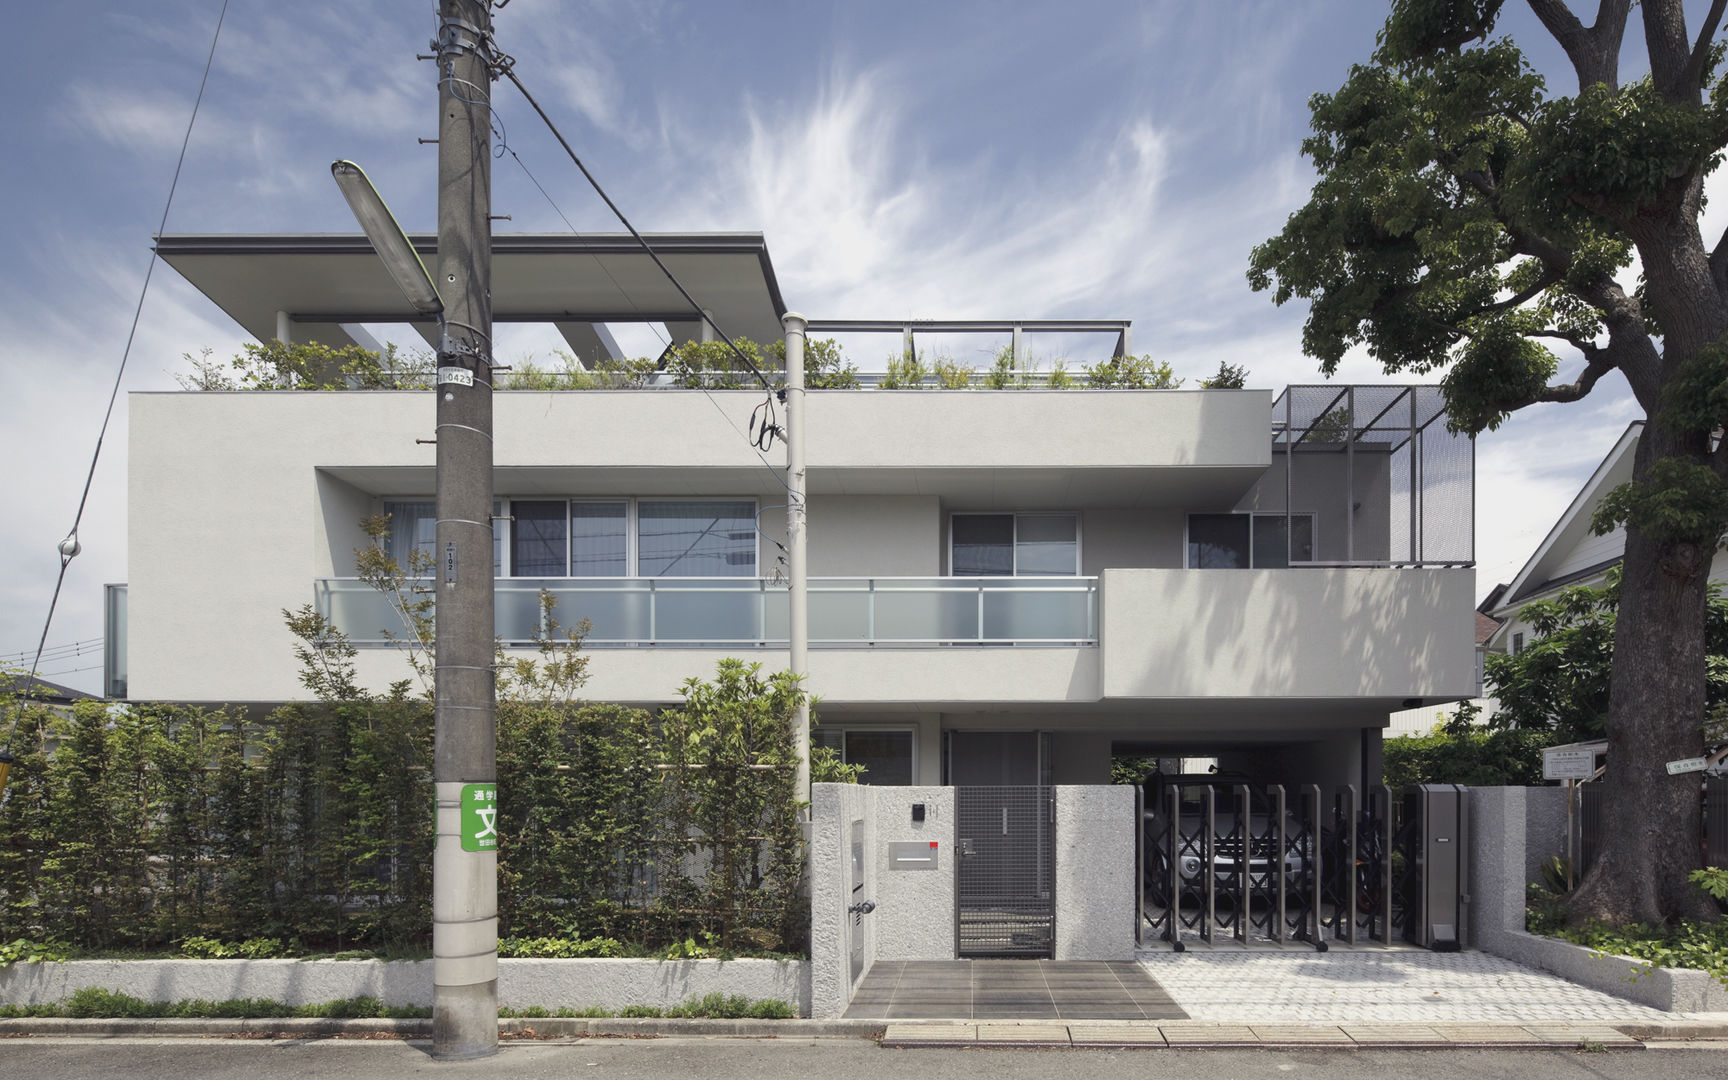 ミドセンチュリーテイスト 居間がテラスと一体化して繋がる成城の住まい, JWA，Jun Watanabe & Associates JWA，Jun Watanabe & Associates Casas de estilo moderno